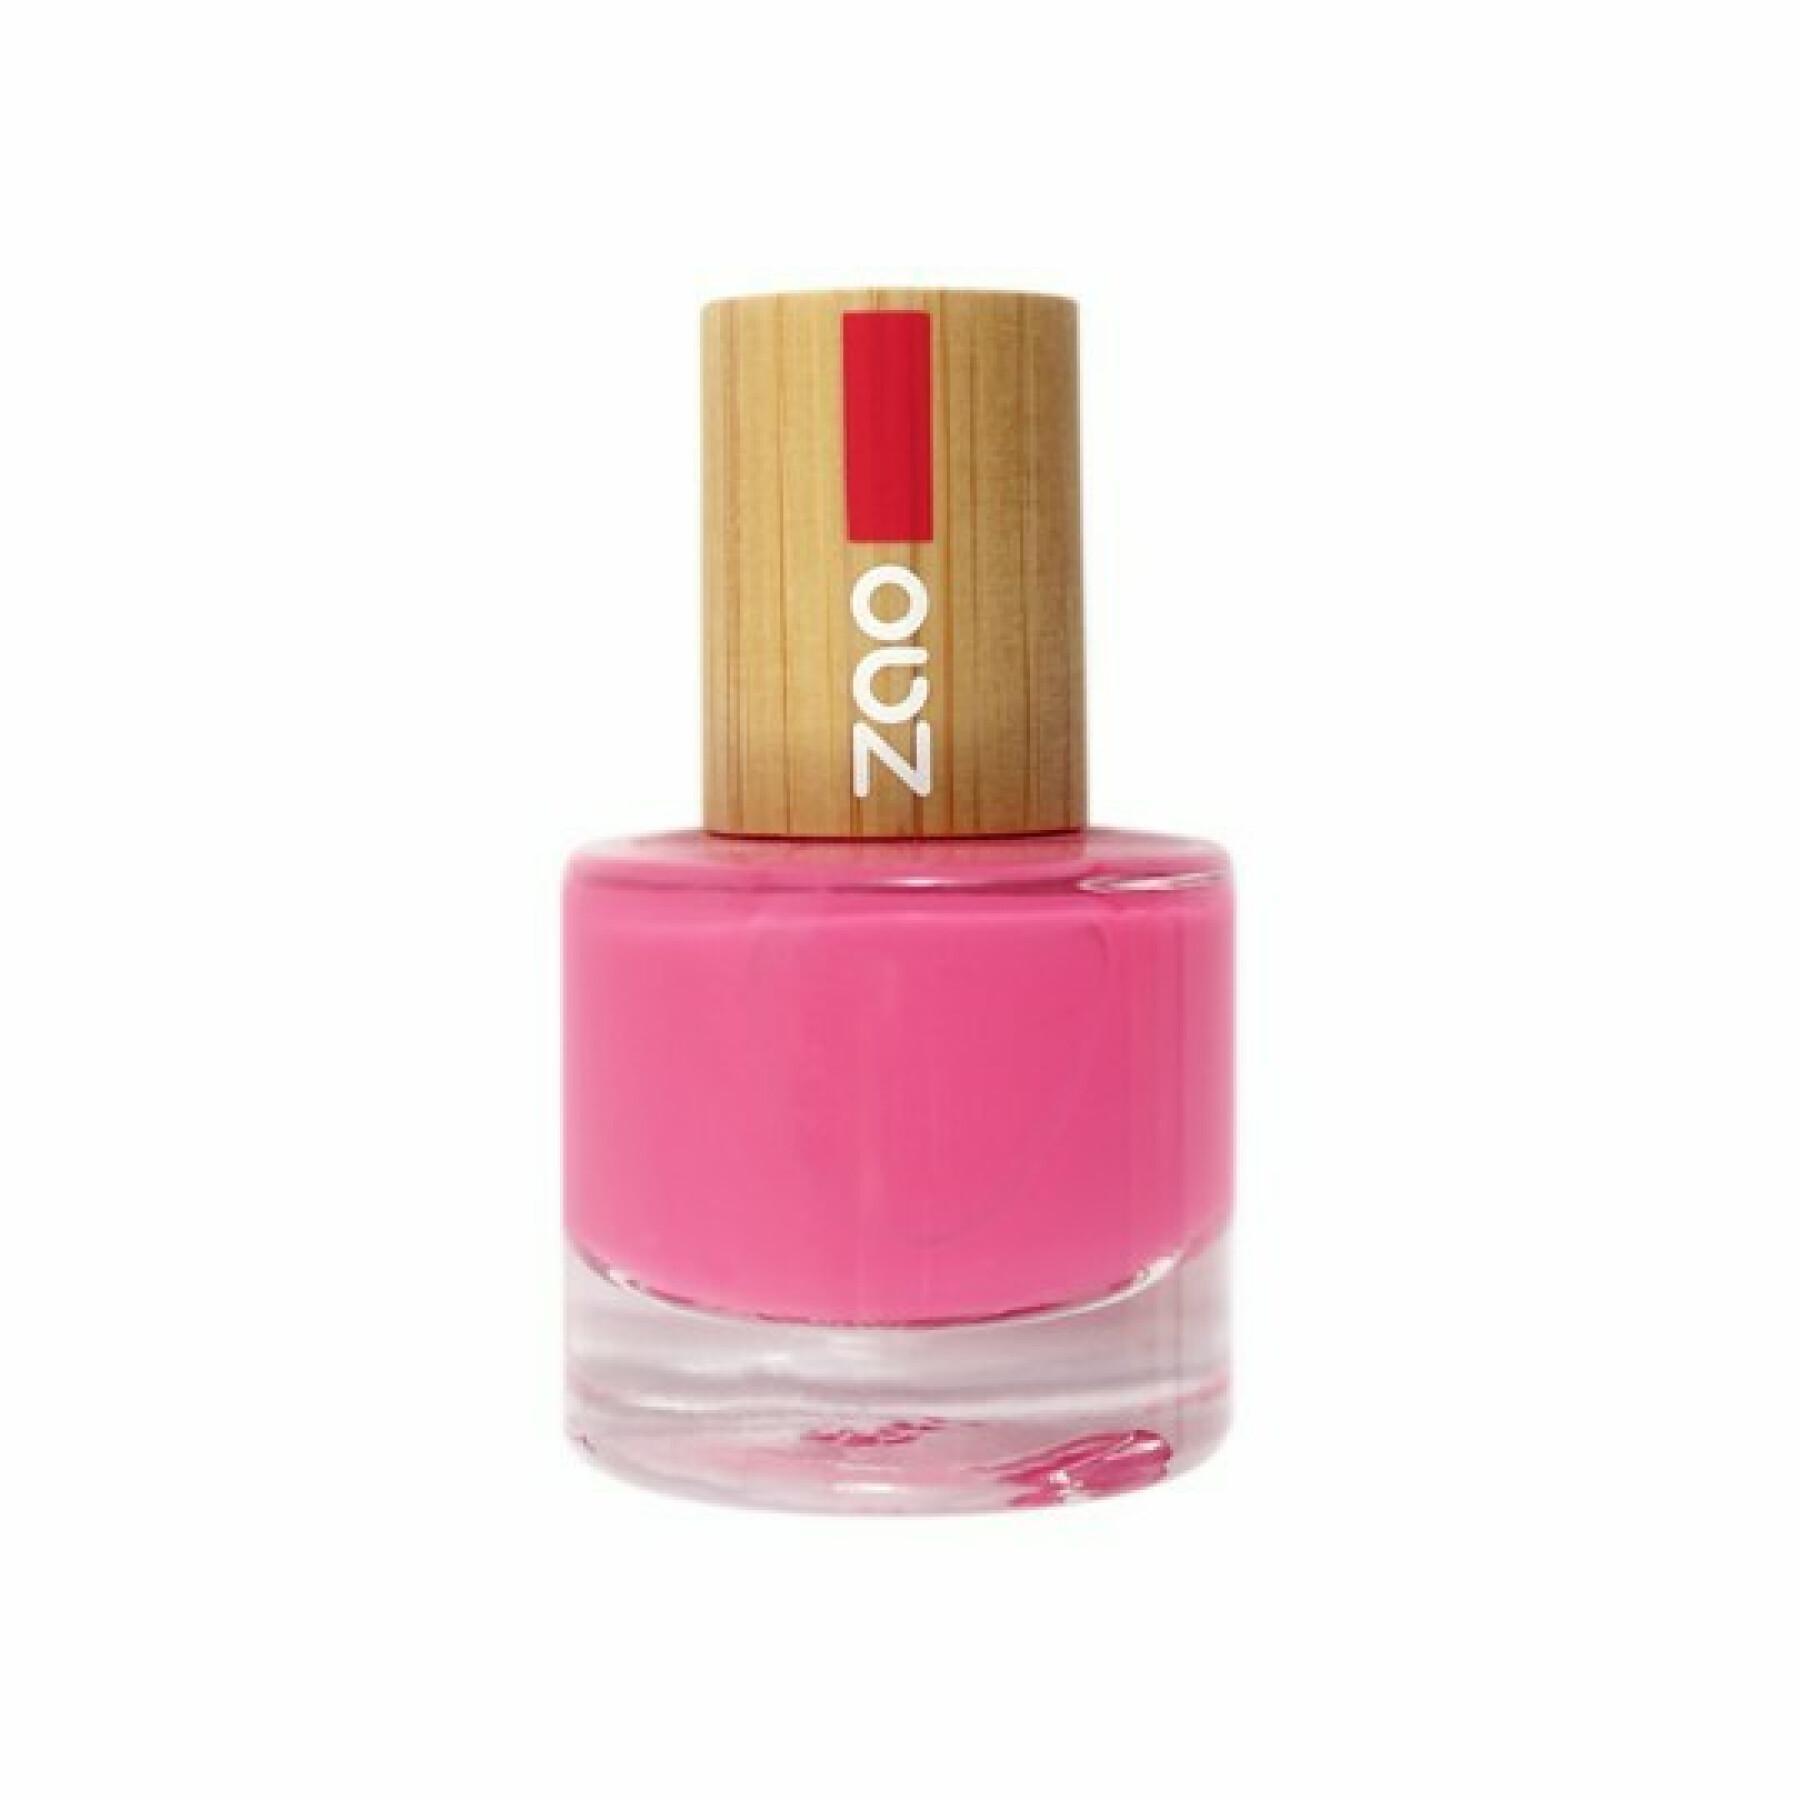 Nail polish 657 pink fuchsia woman Zao - 8 ml